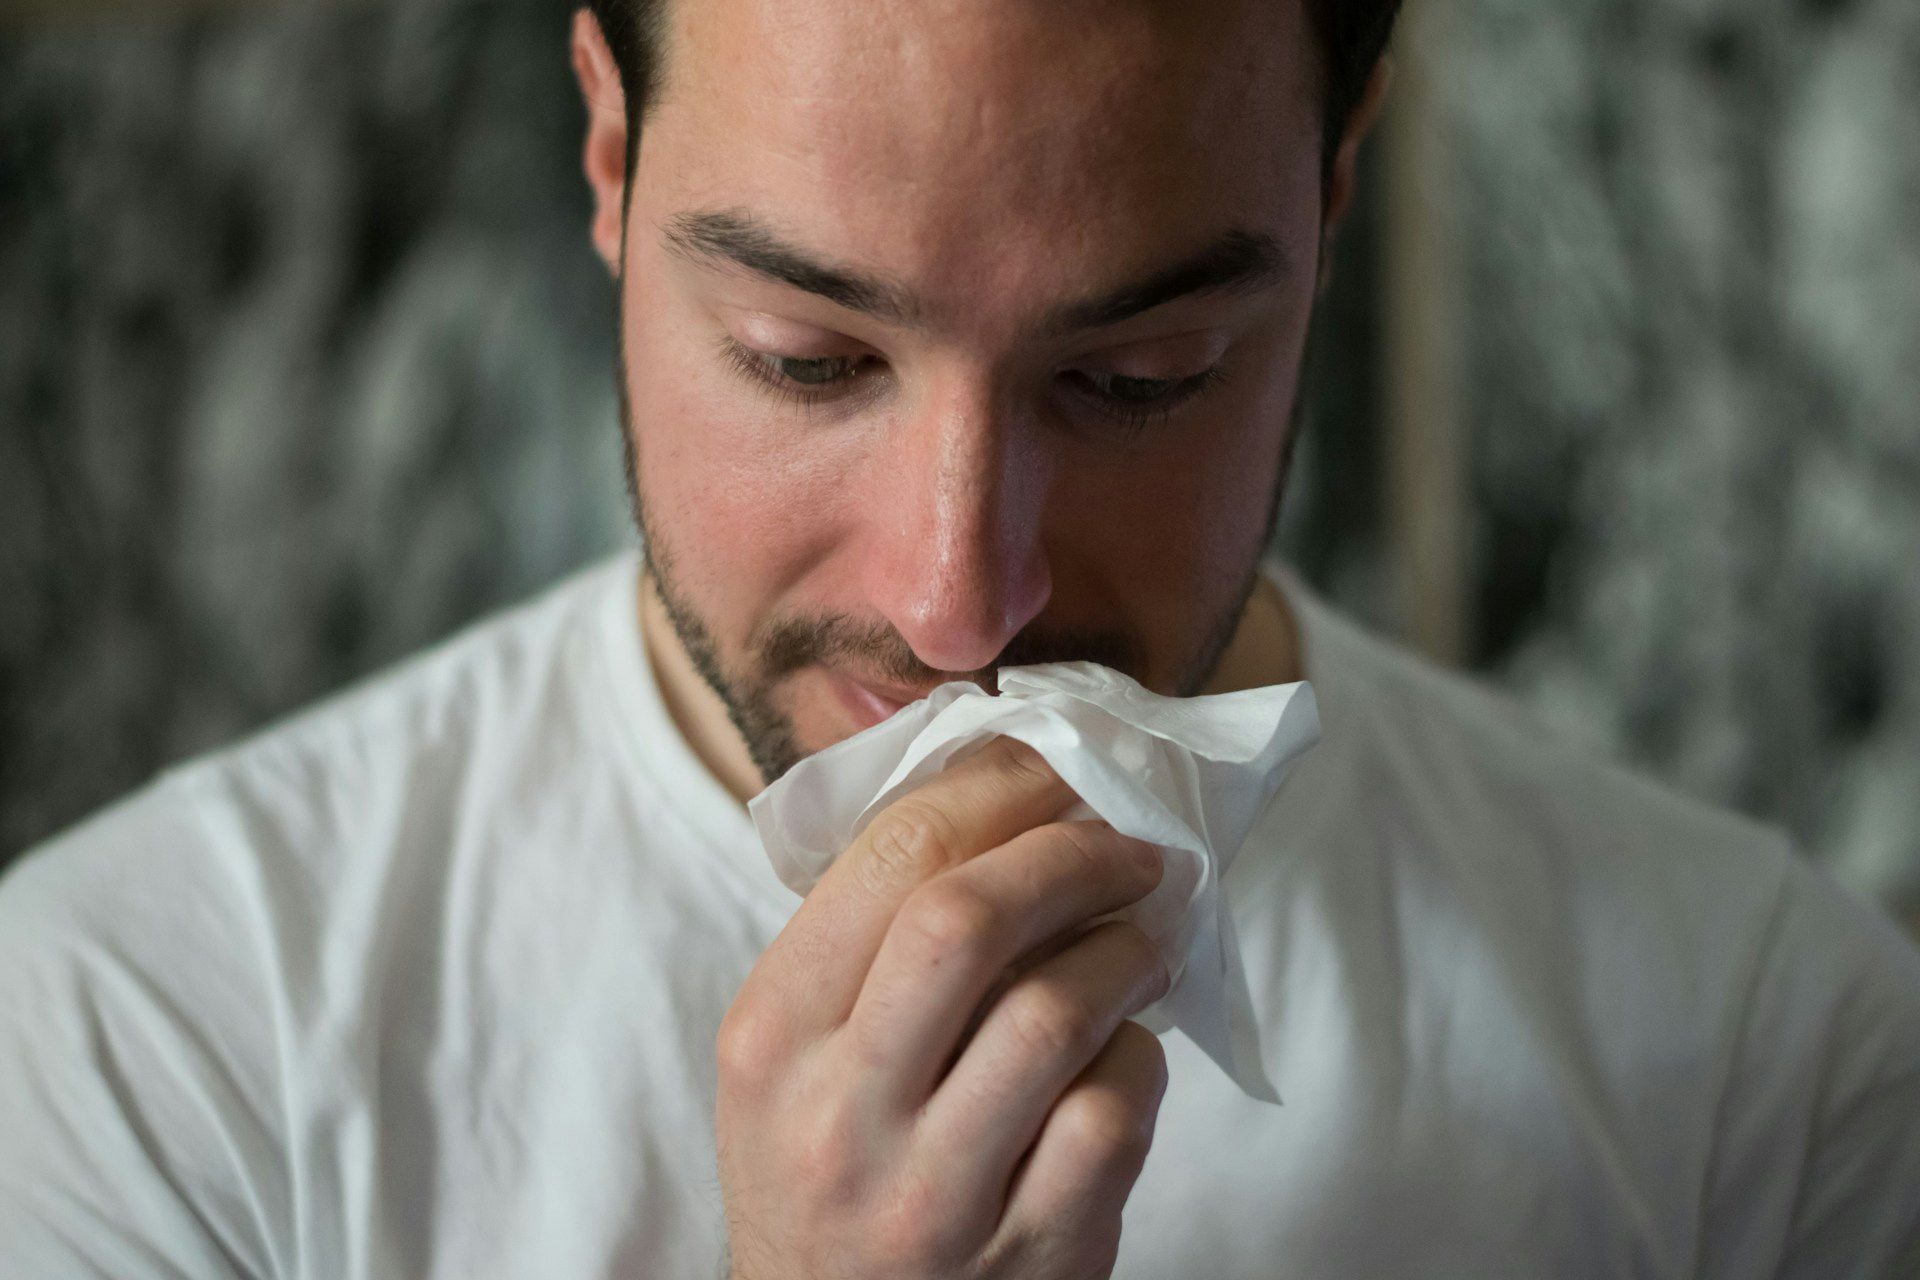 El resfriado es una enfermedad viral común que afecta principalmente la nariz y la garganta